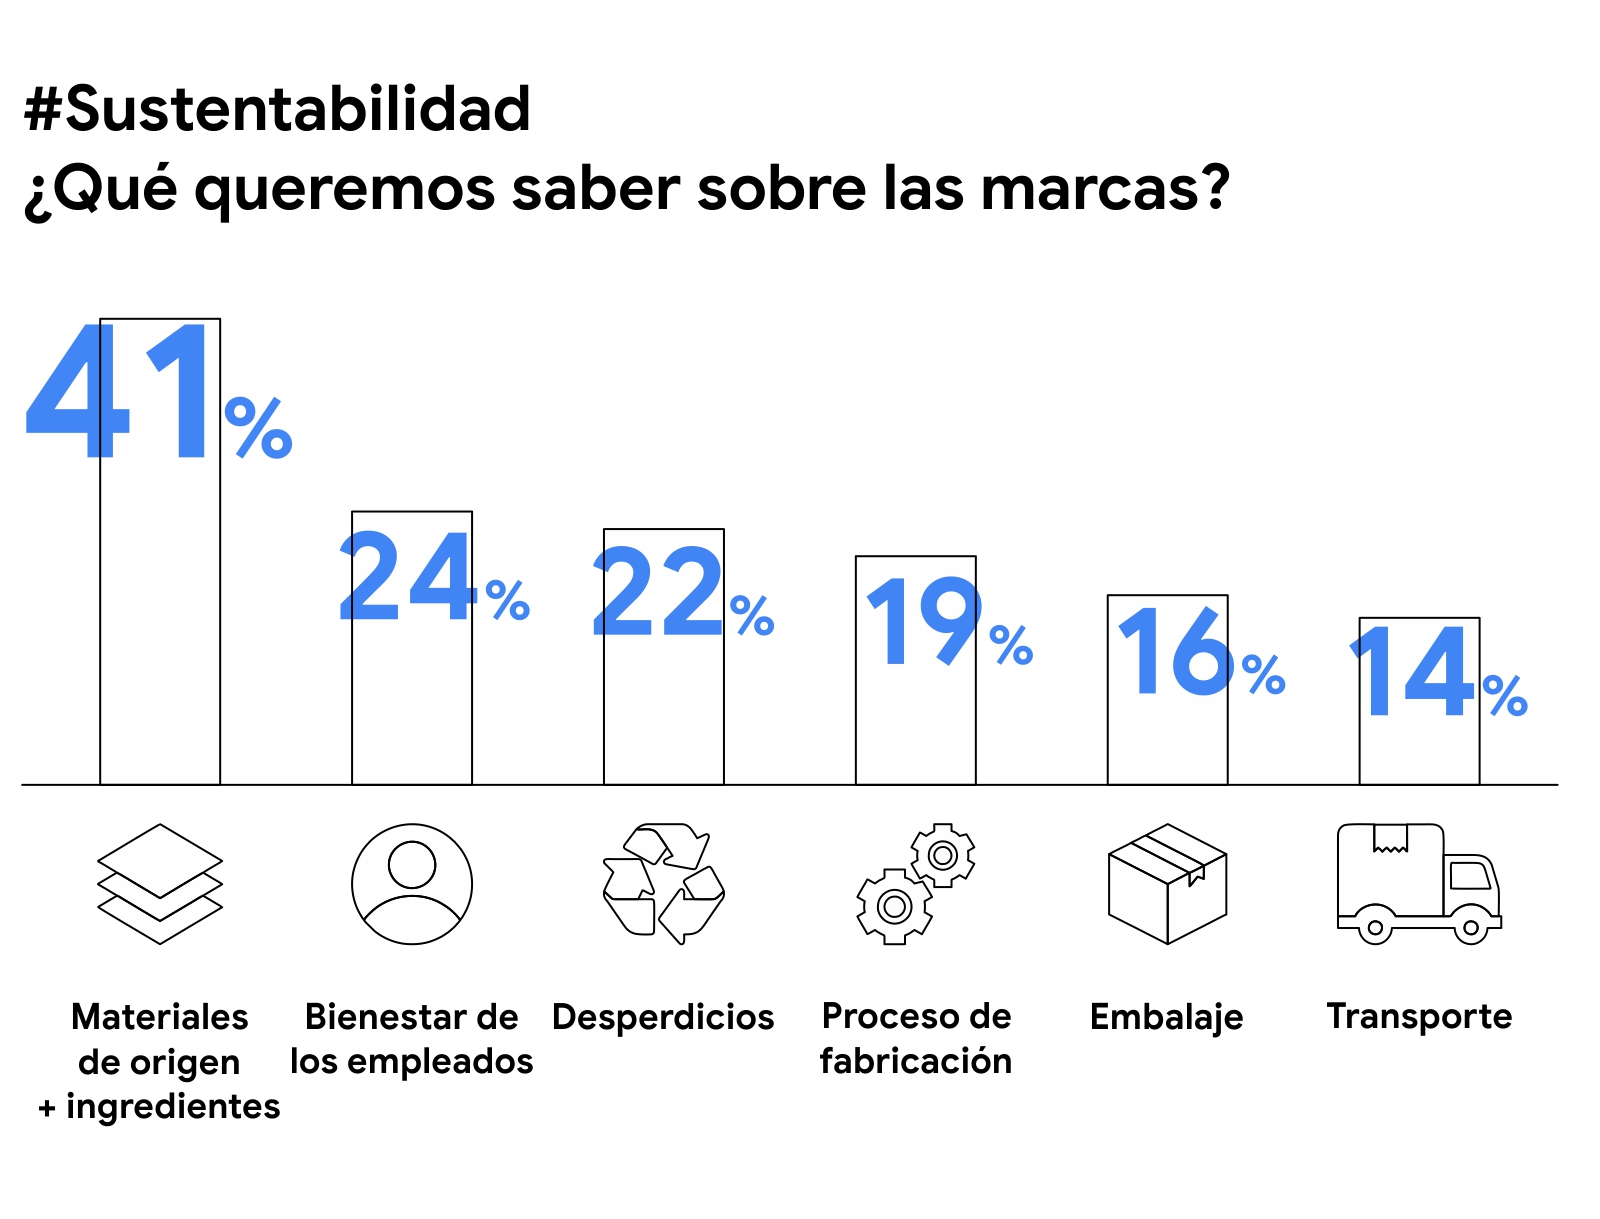 Un gráfico muestra lo que queremos saber sobre las marcas y la sustentabilidad: el 41% sobre materiales de origen e ingredientes, el 24% sobre bienestar de los empleados, el 22% sobre desperdicios y otros.